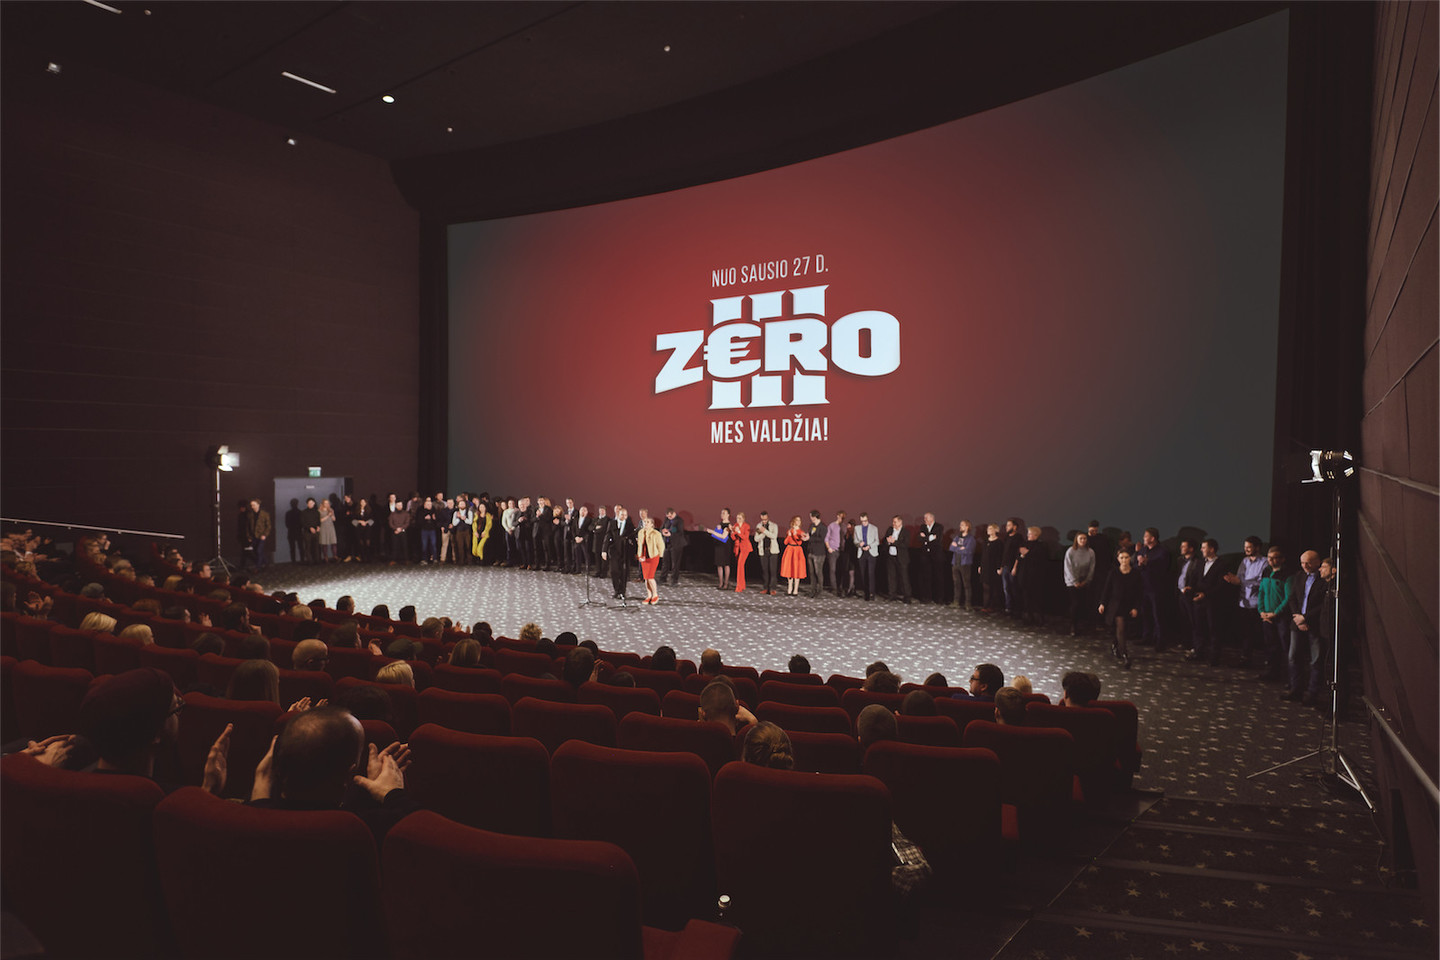 Per išankstinius seansus ir pirmąjį savaitgalį „Zero III“ kino teatruose pamatė 68 300 žiūrovų bei surinko 361 112 eurų pajamų.